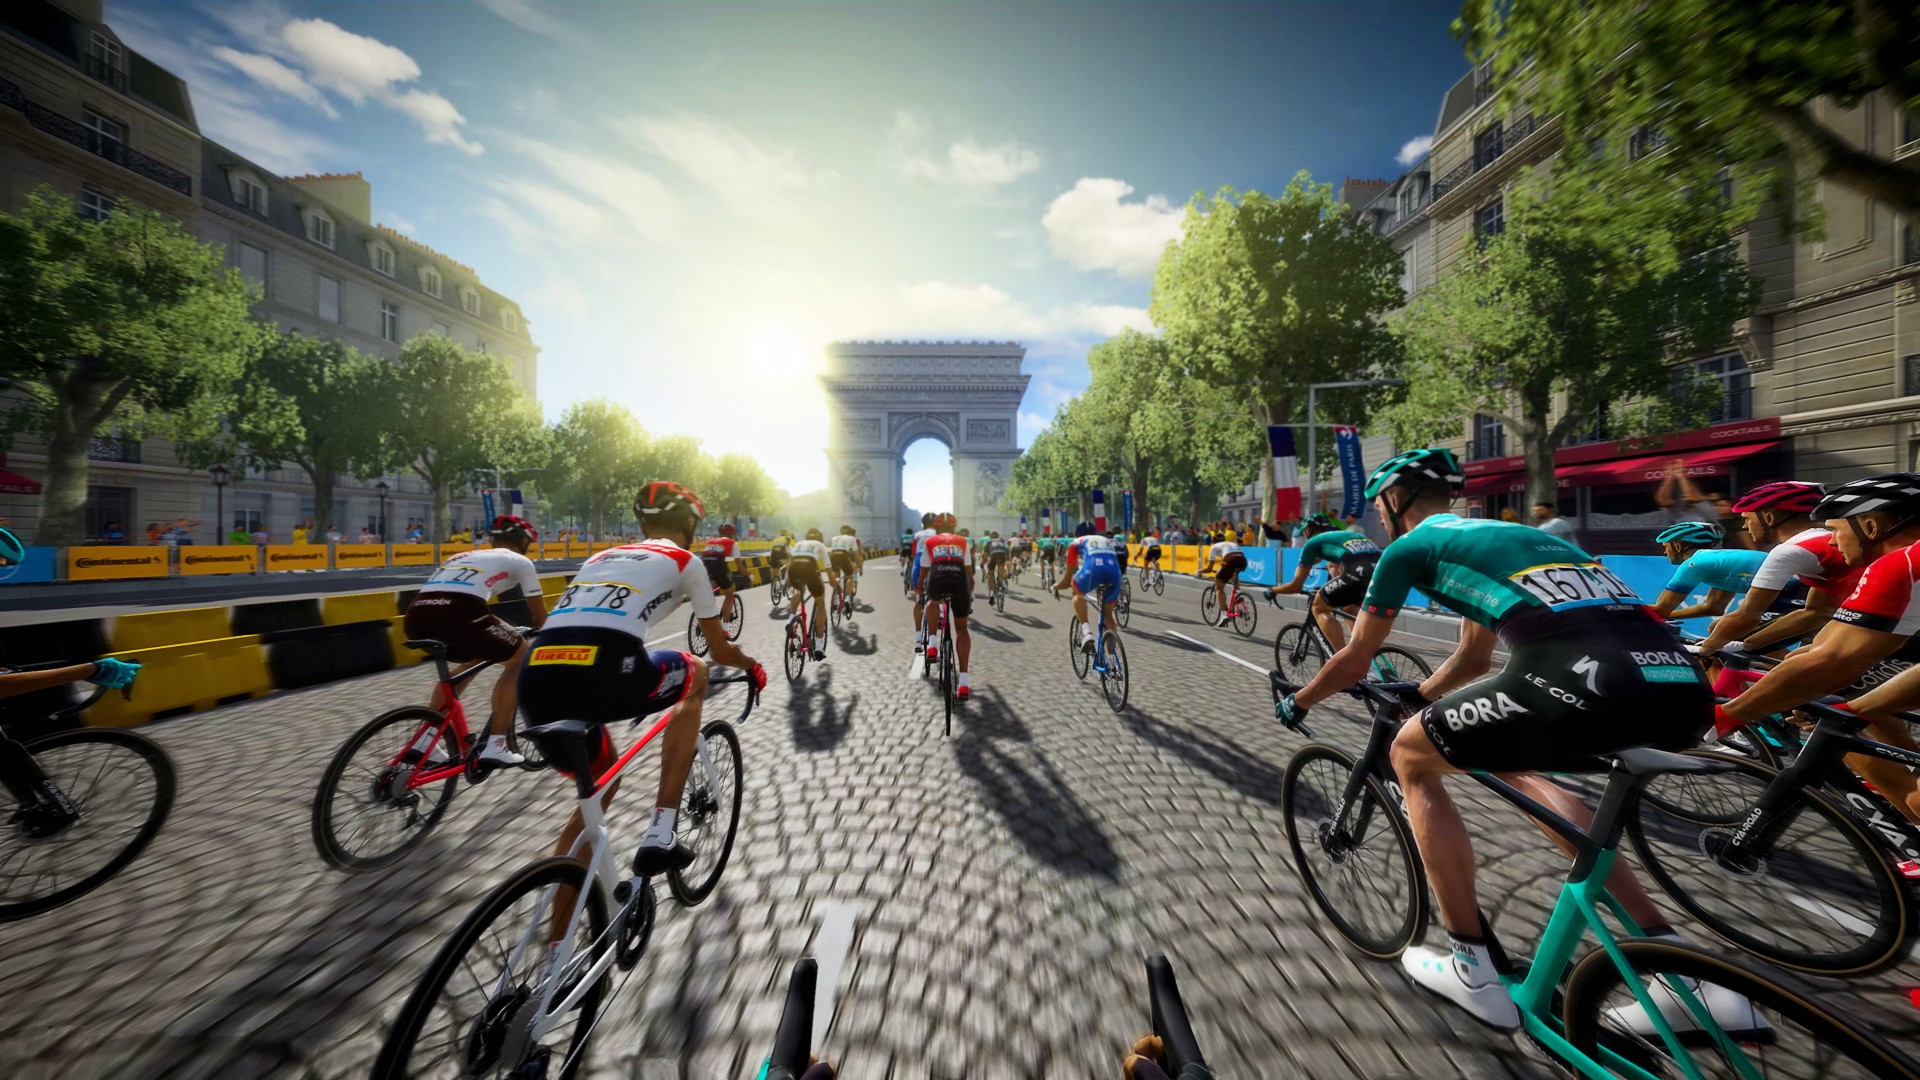 Tour de France 2022, la carrera por el maillot amarillo comienza ya | Ocio y cultura | Cadena